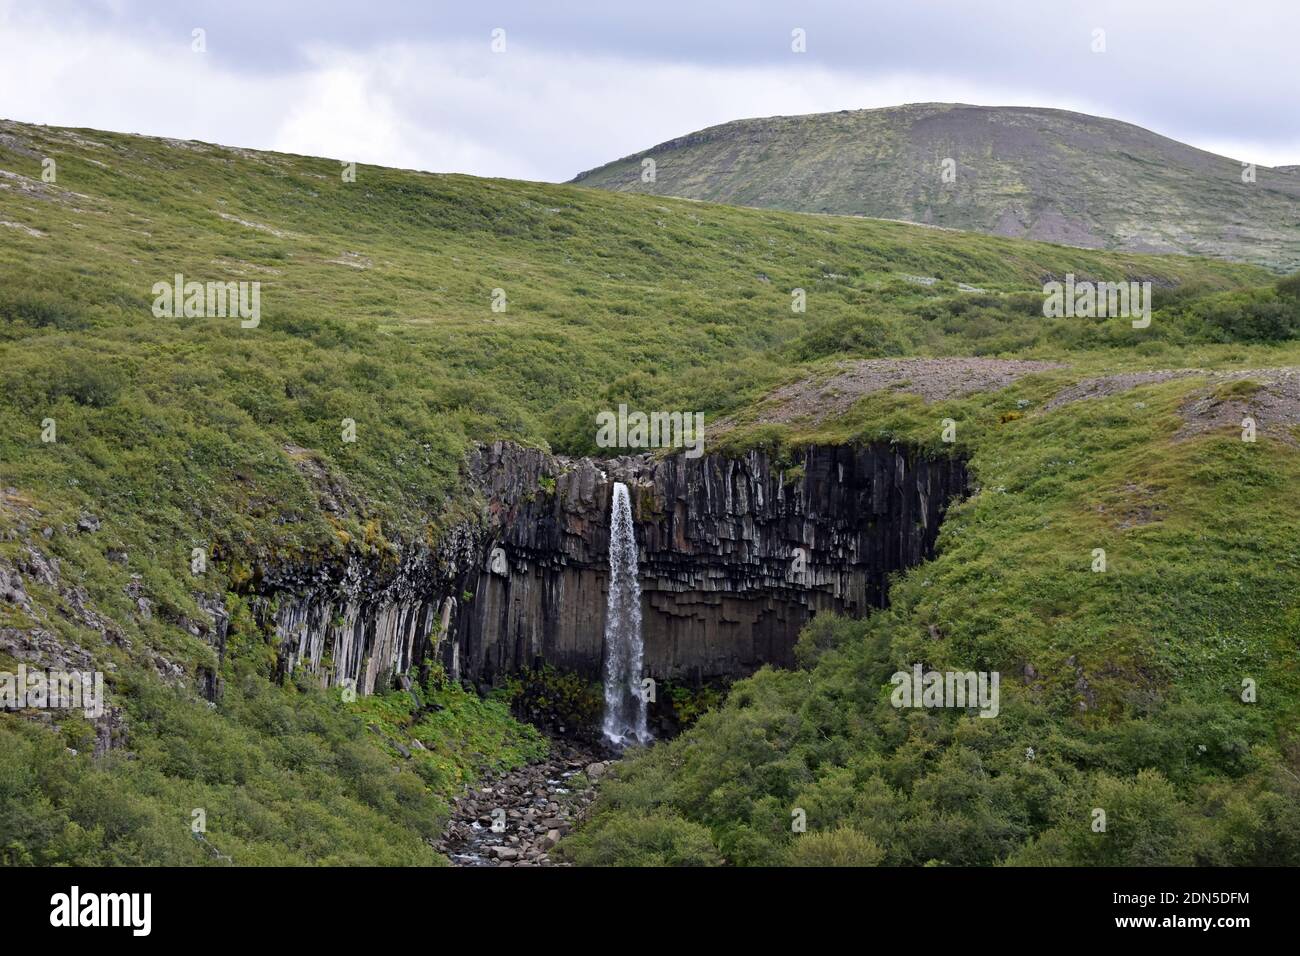 Une vue lointaine de la cascade de Svartifoss à Skaftafell, une partie du parc national de Vatnajokull, en Islande. La forêt entoure les colonnes de lave et la cascade Banque D'Images